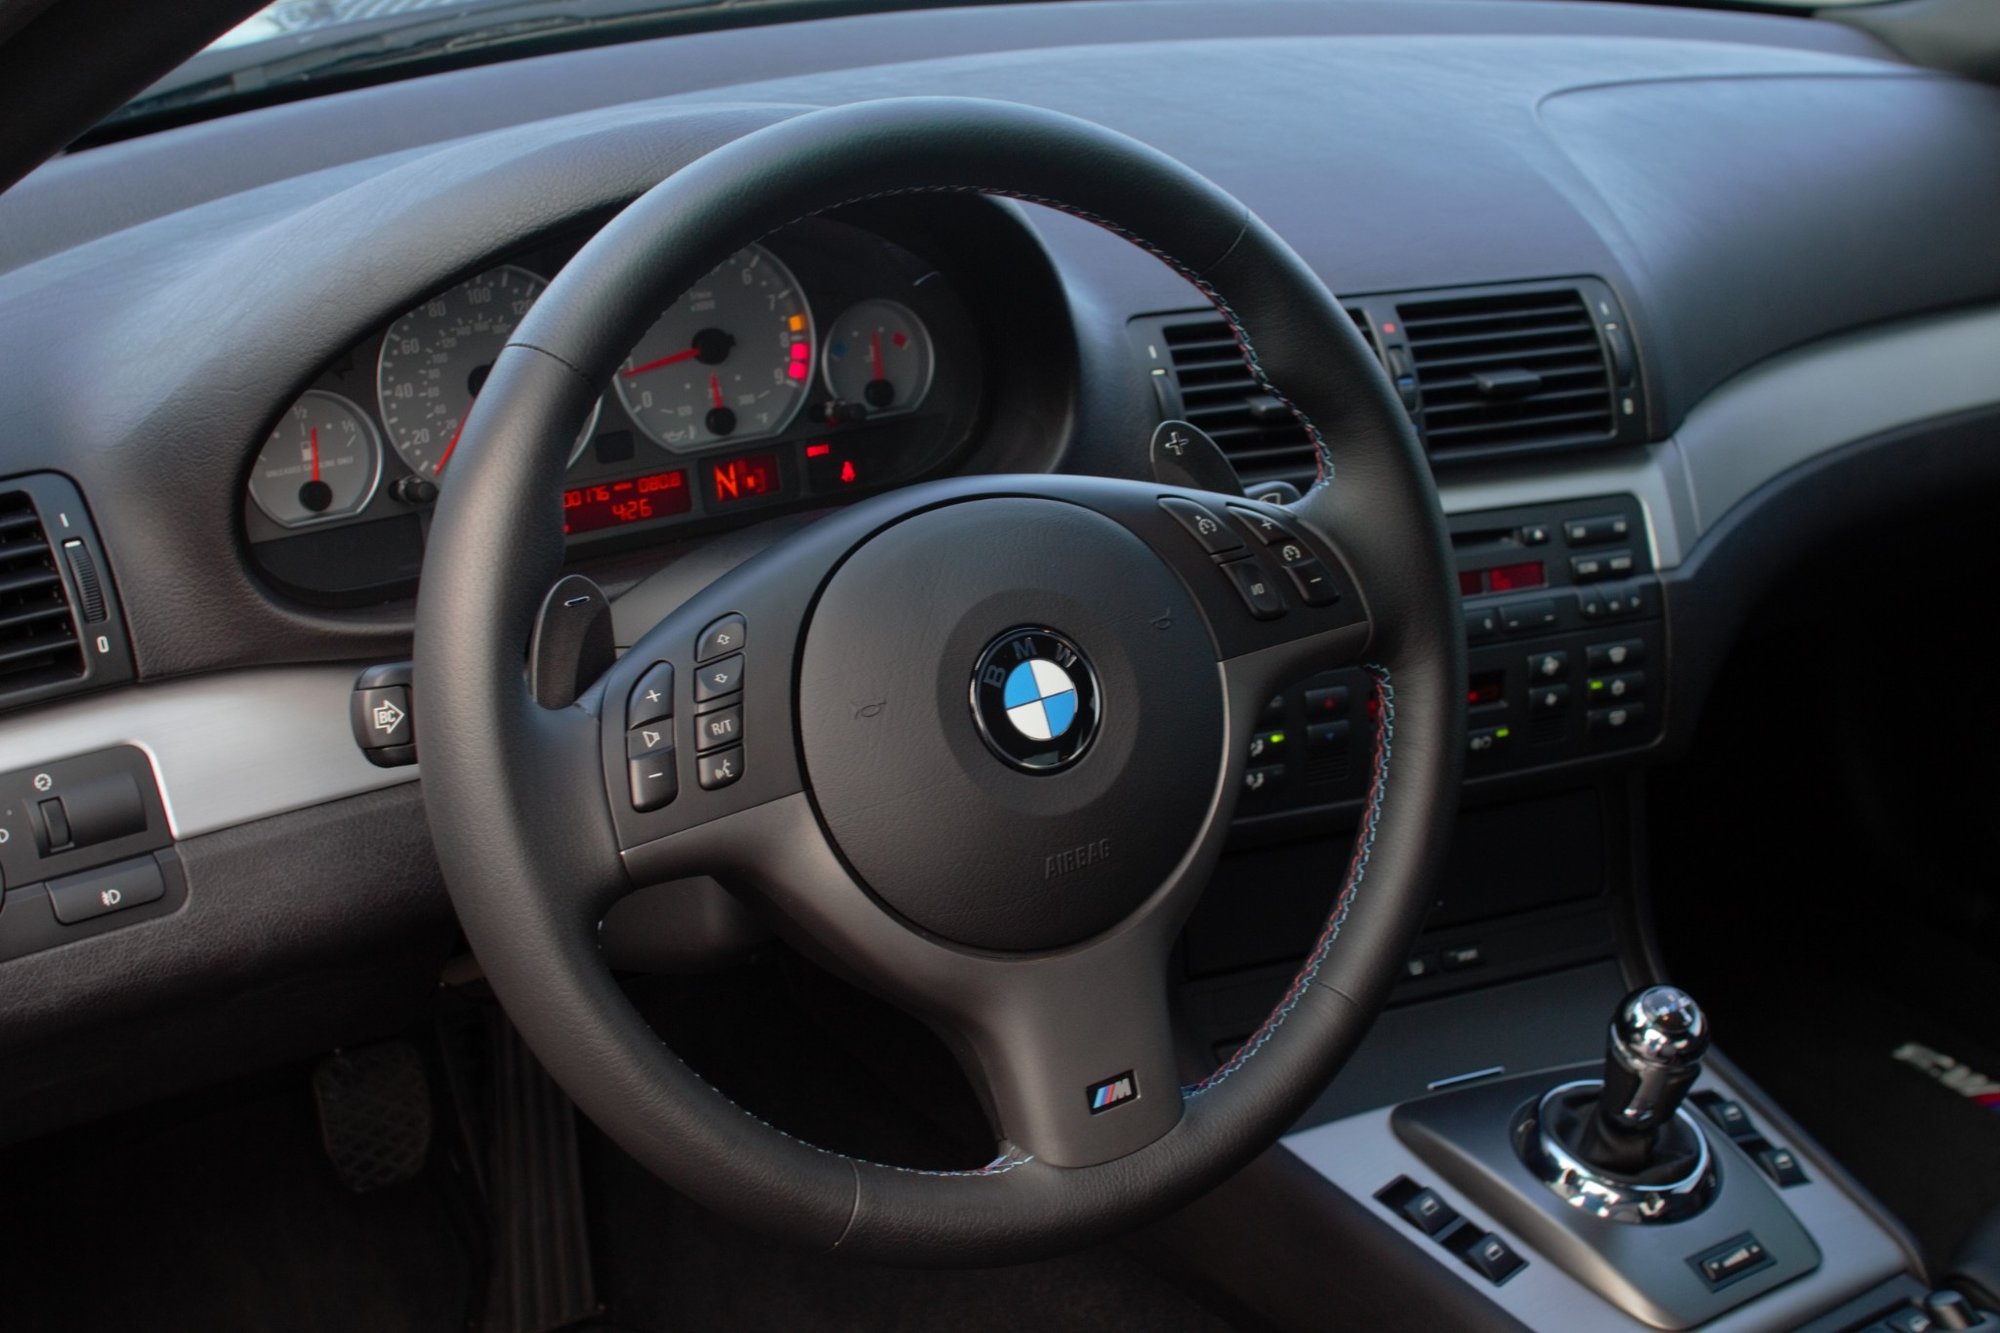 BMW M3 generace e46 s nájezdem 283 km je skutečný poklad